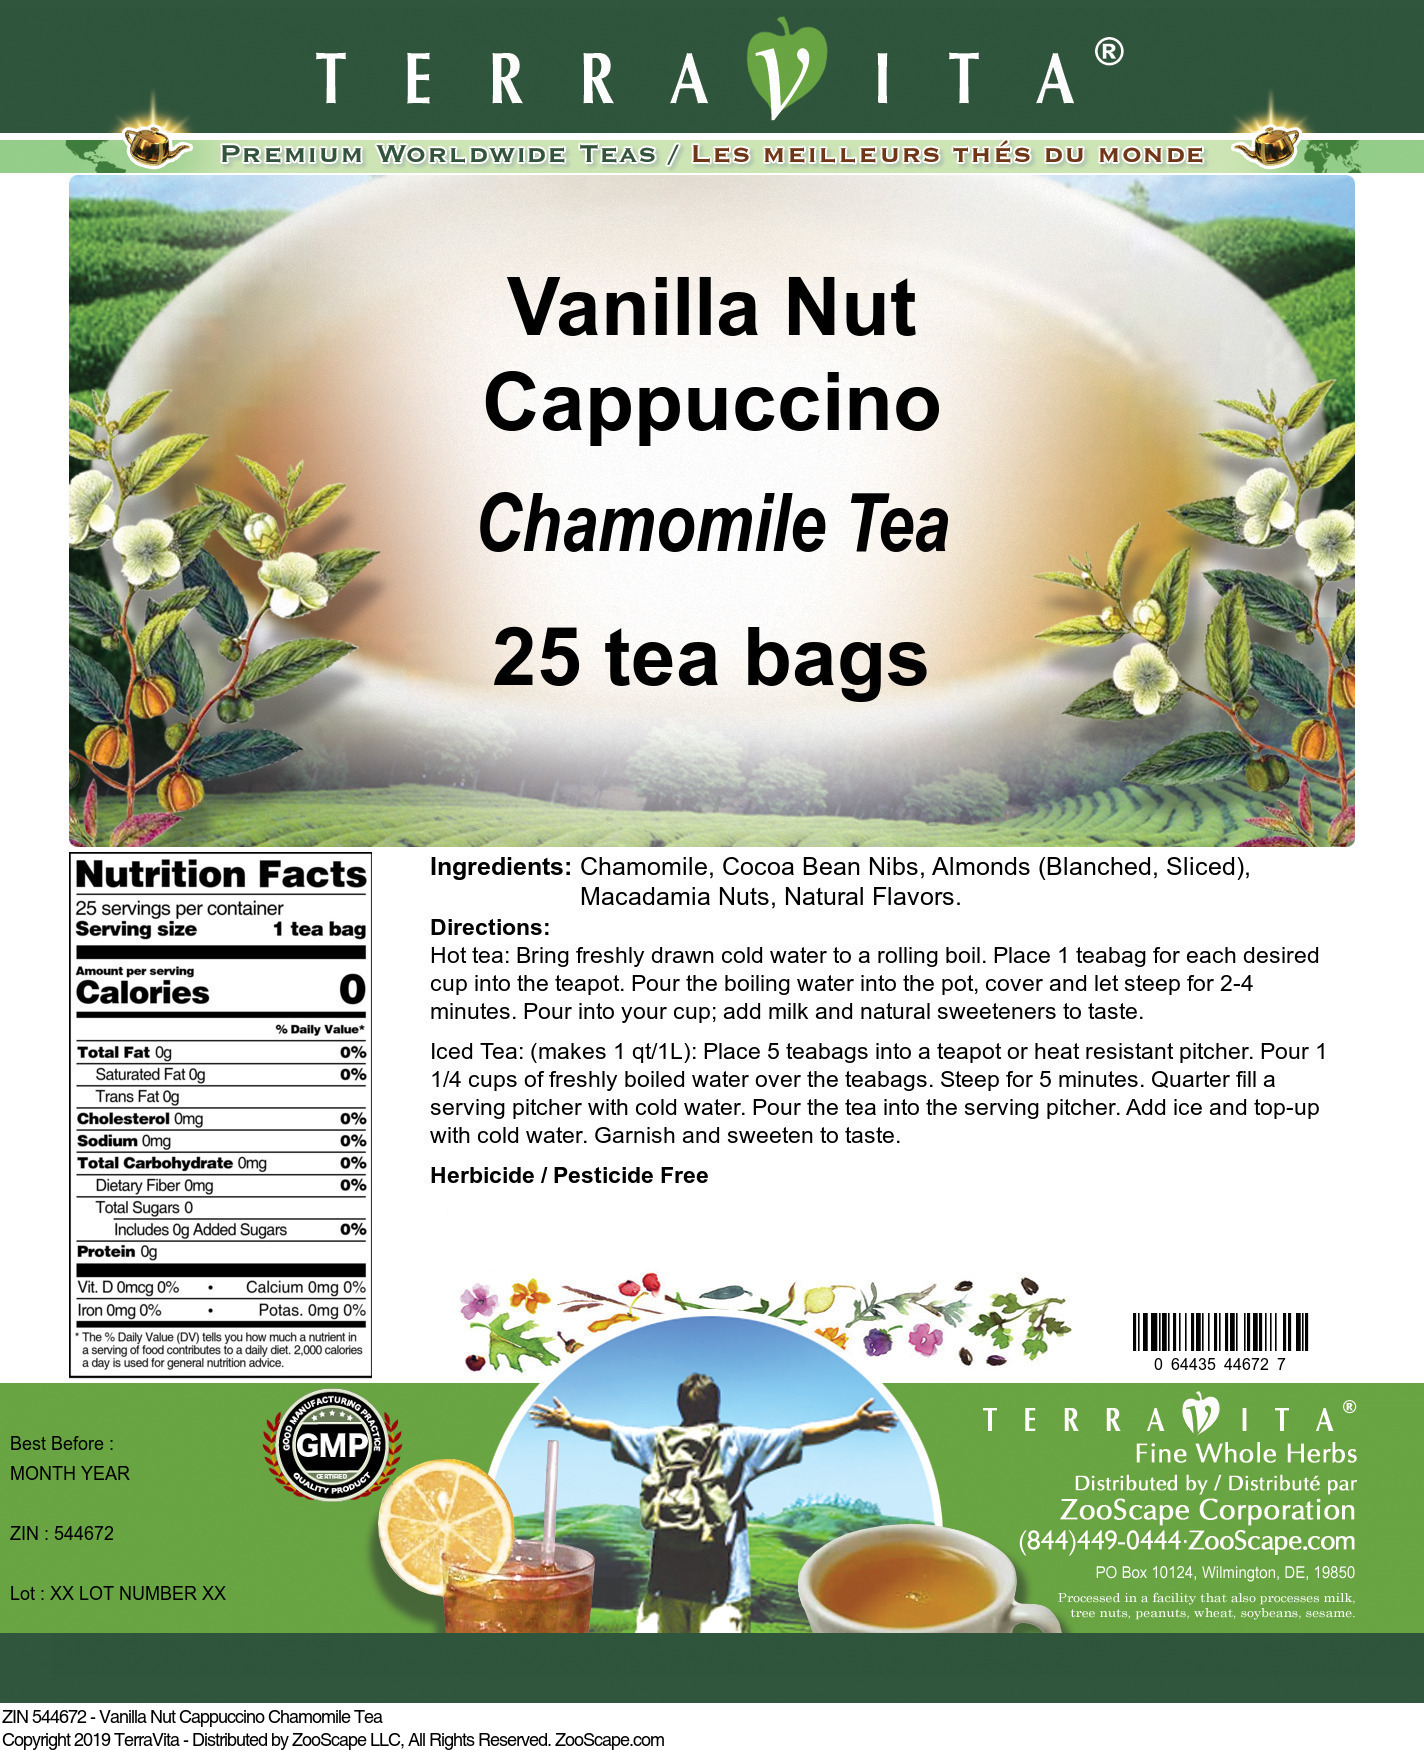 Vanilla Nut Cappuccino Chamomile Tea - Label